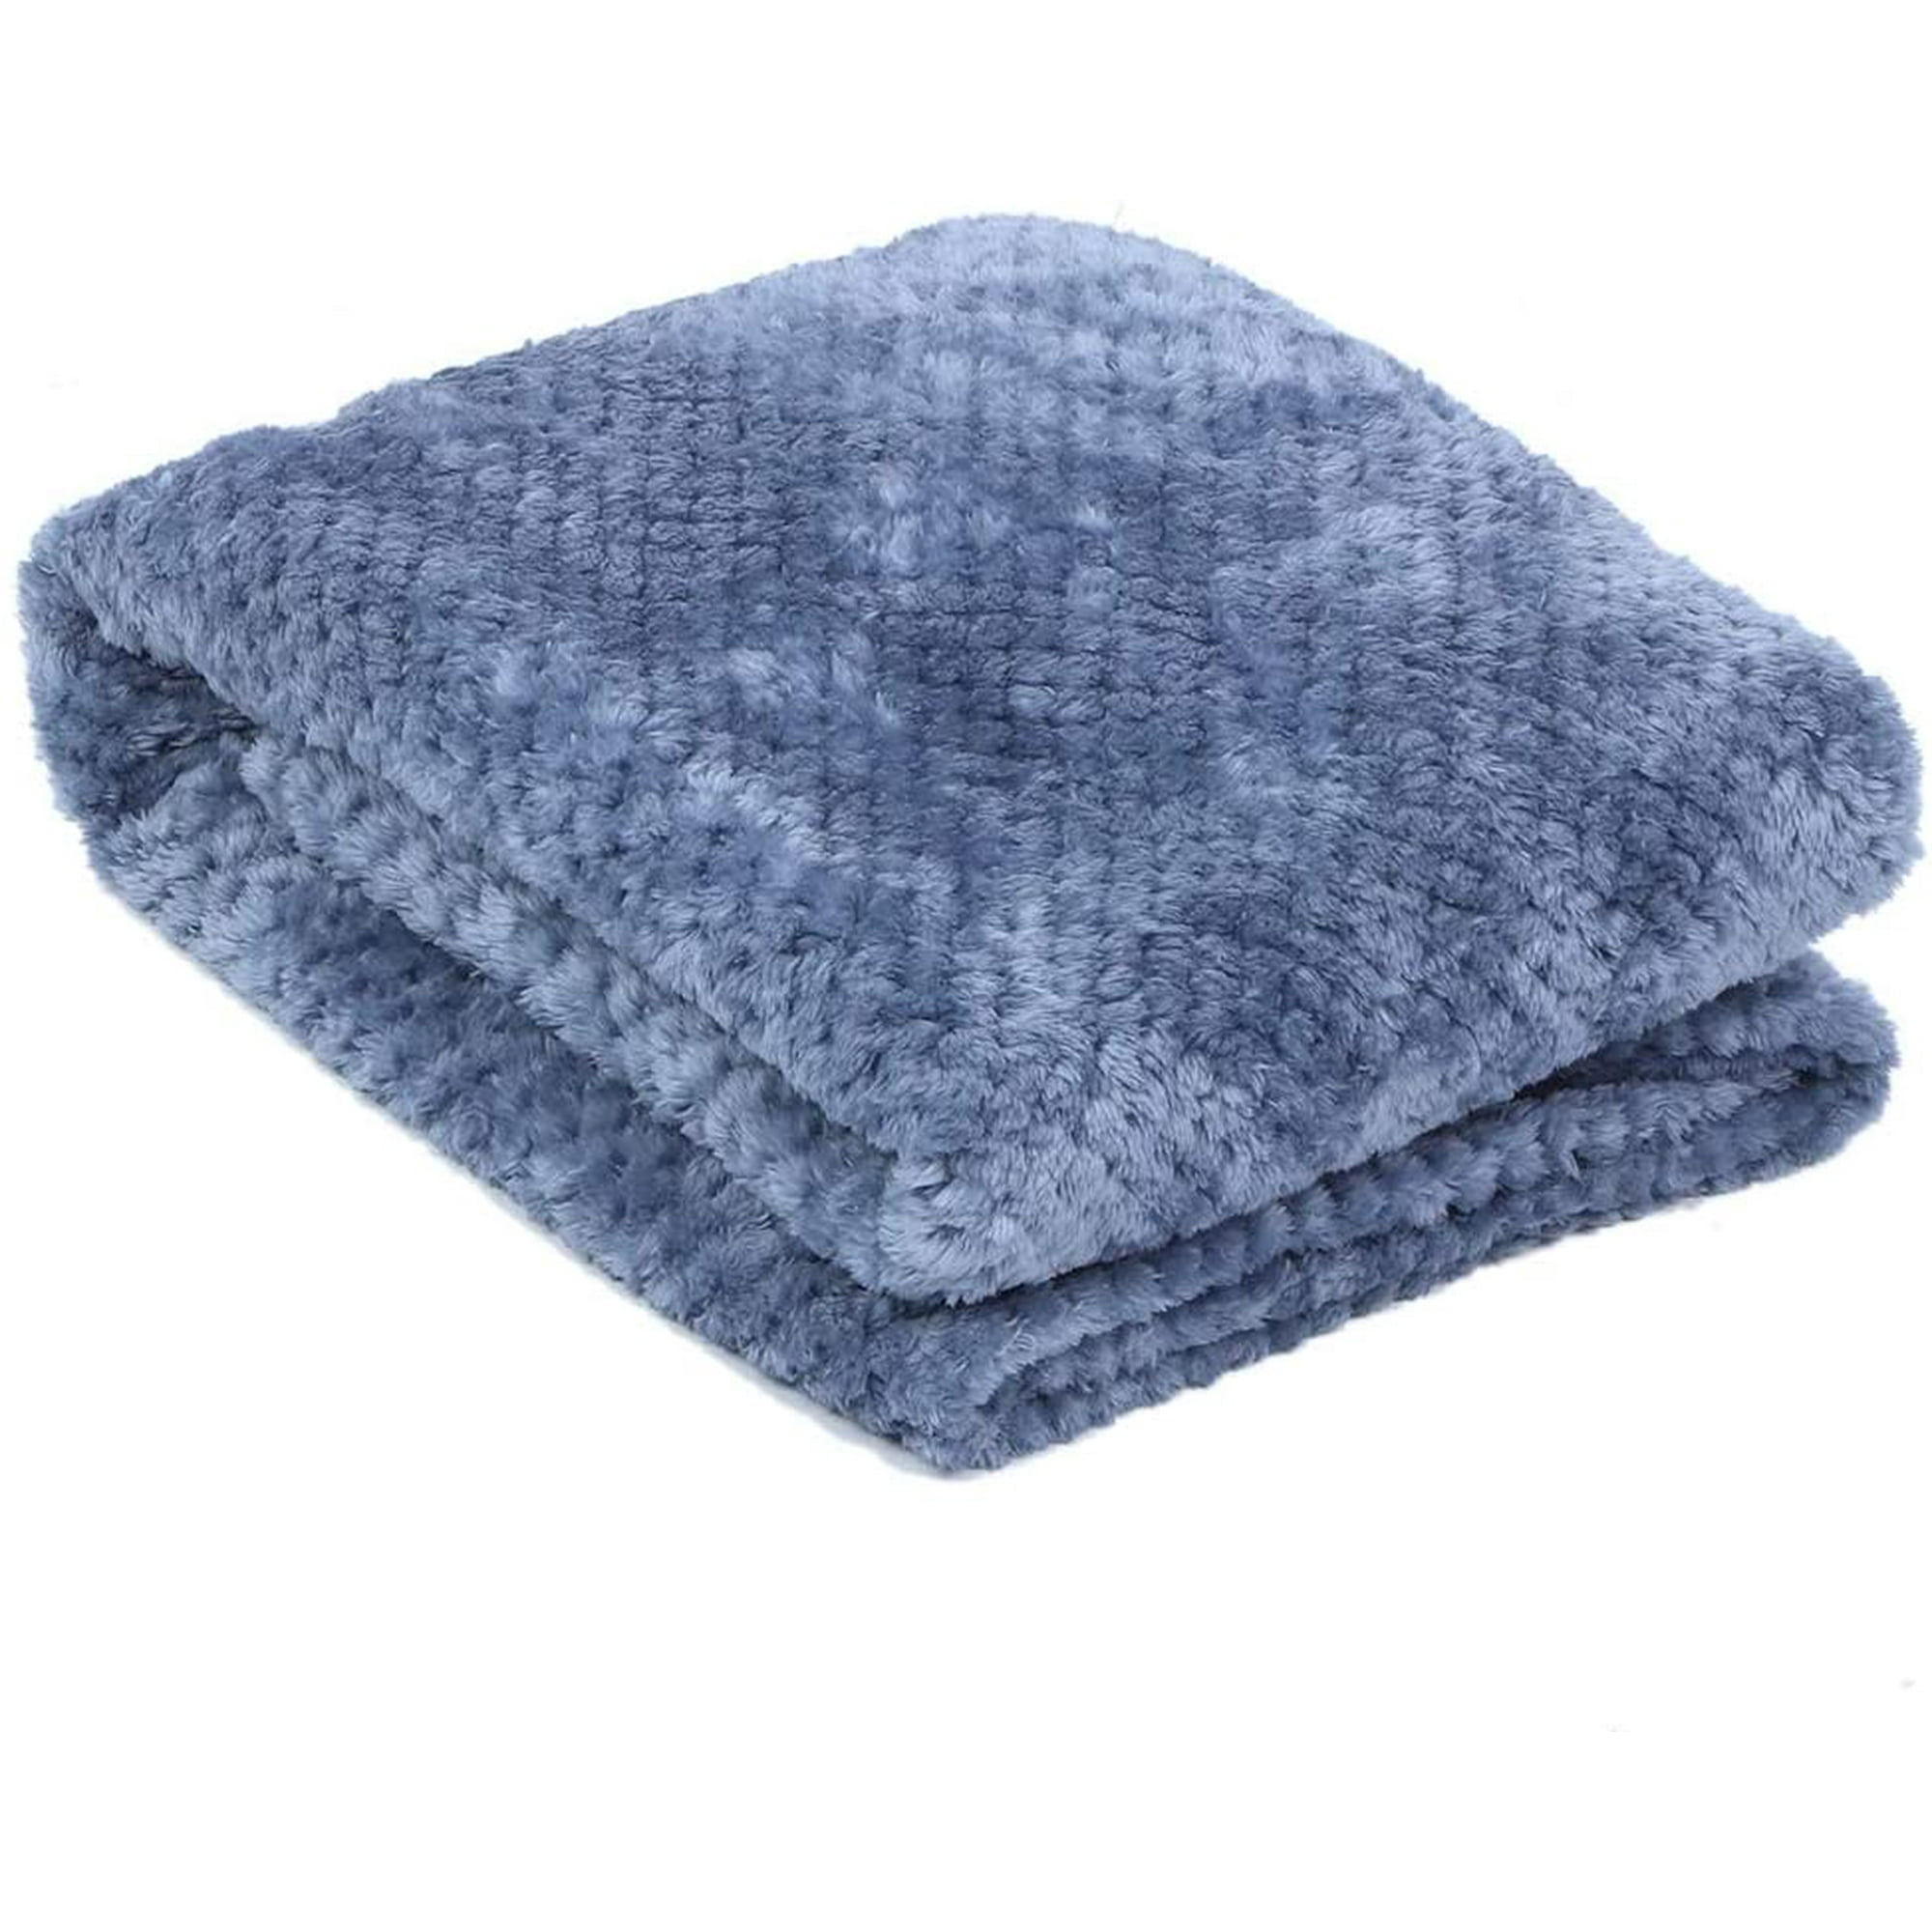 Smoky blue, 70100cm Polyester Blanket Sofa for Spring Bed Summer Wrinkle Resistance Blanket 